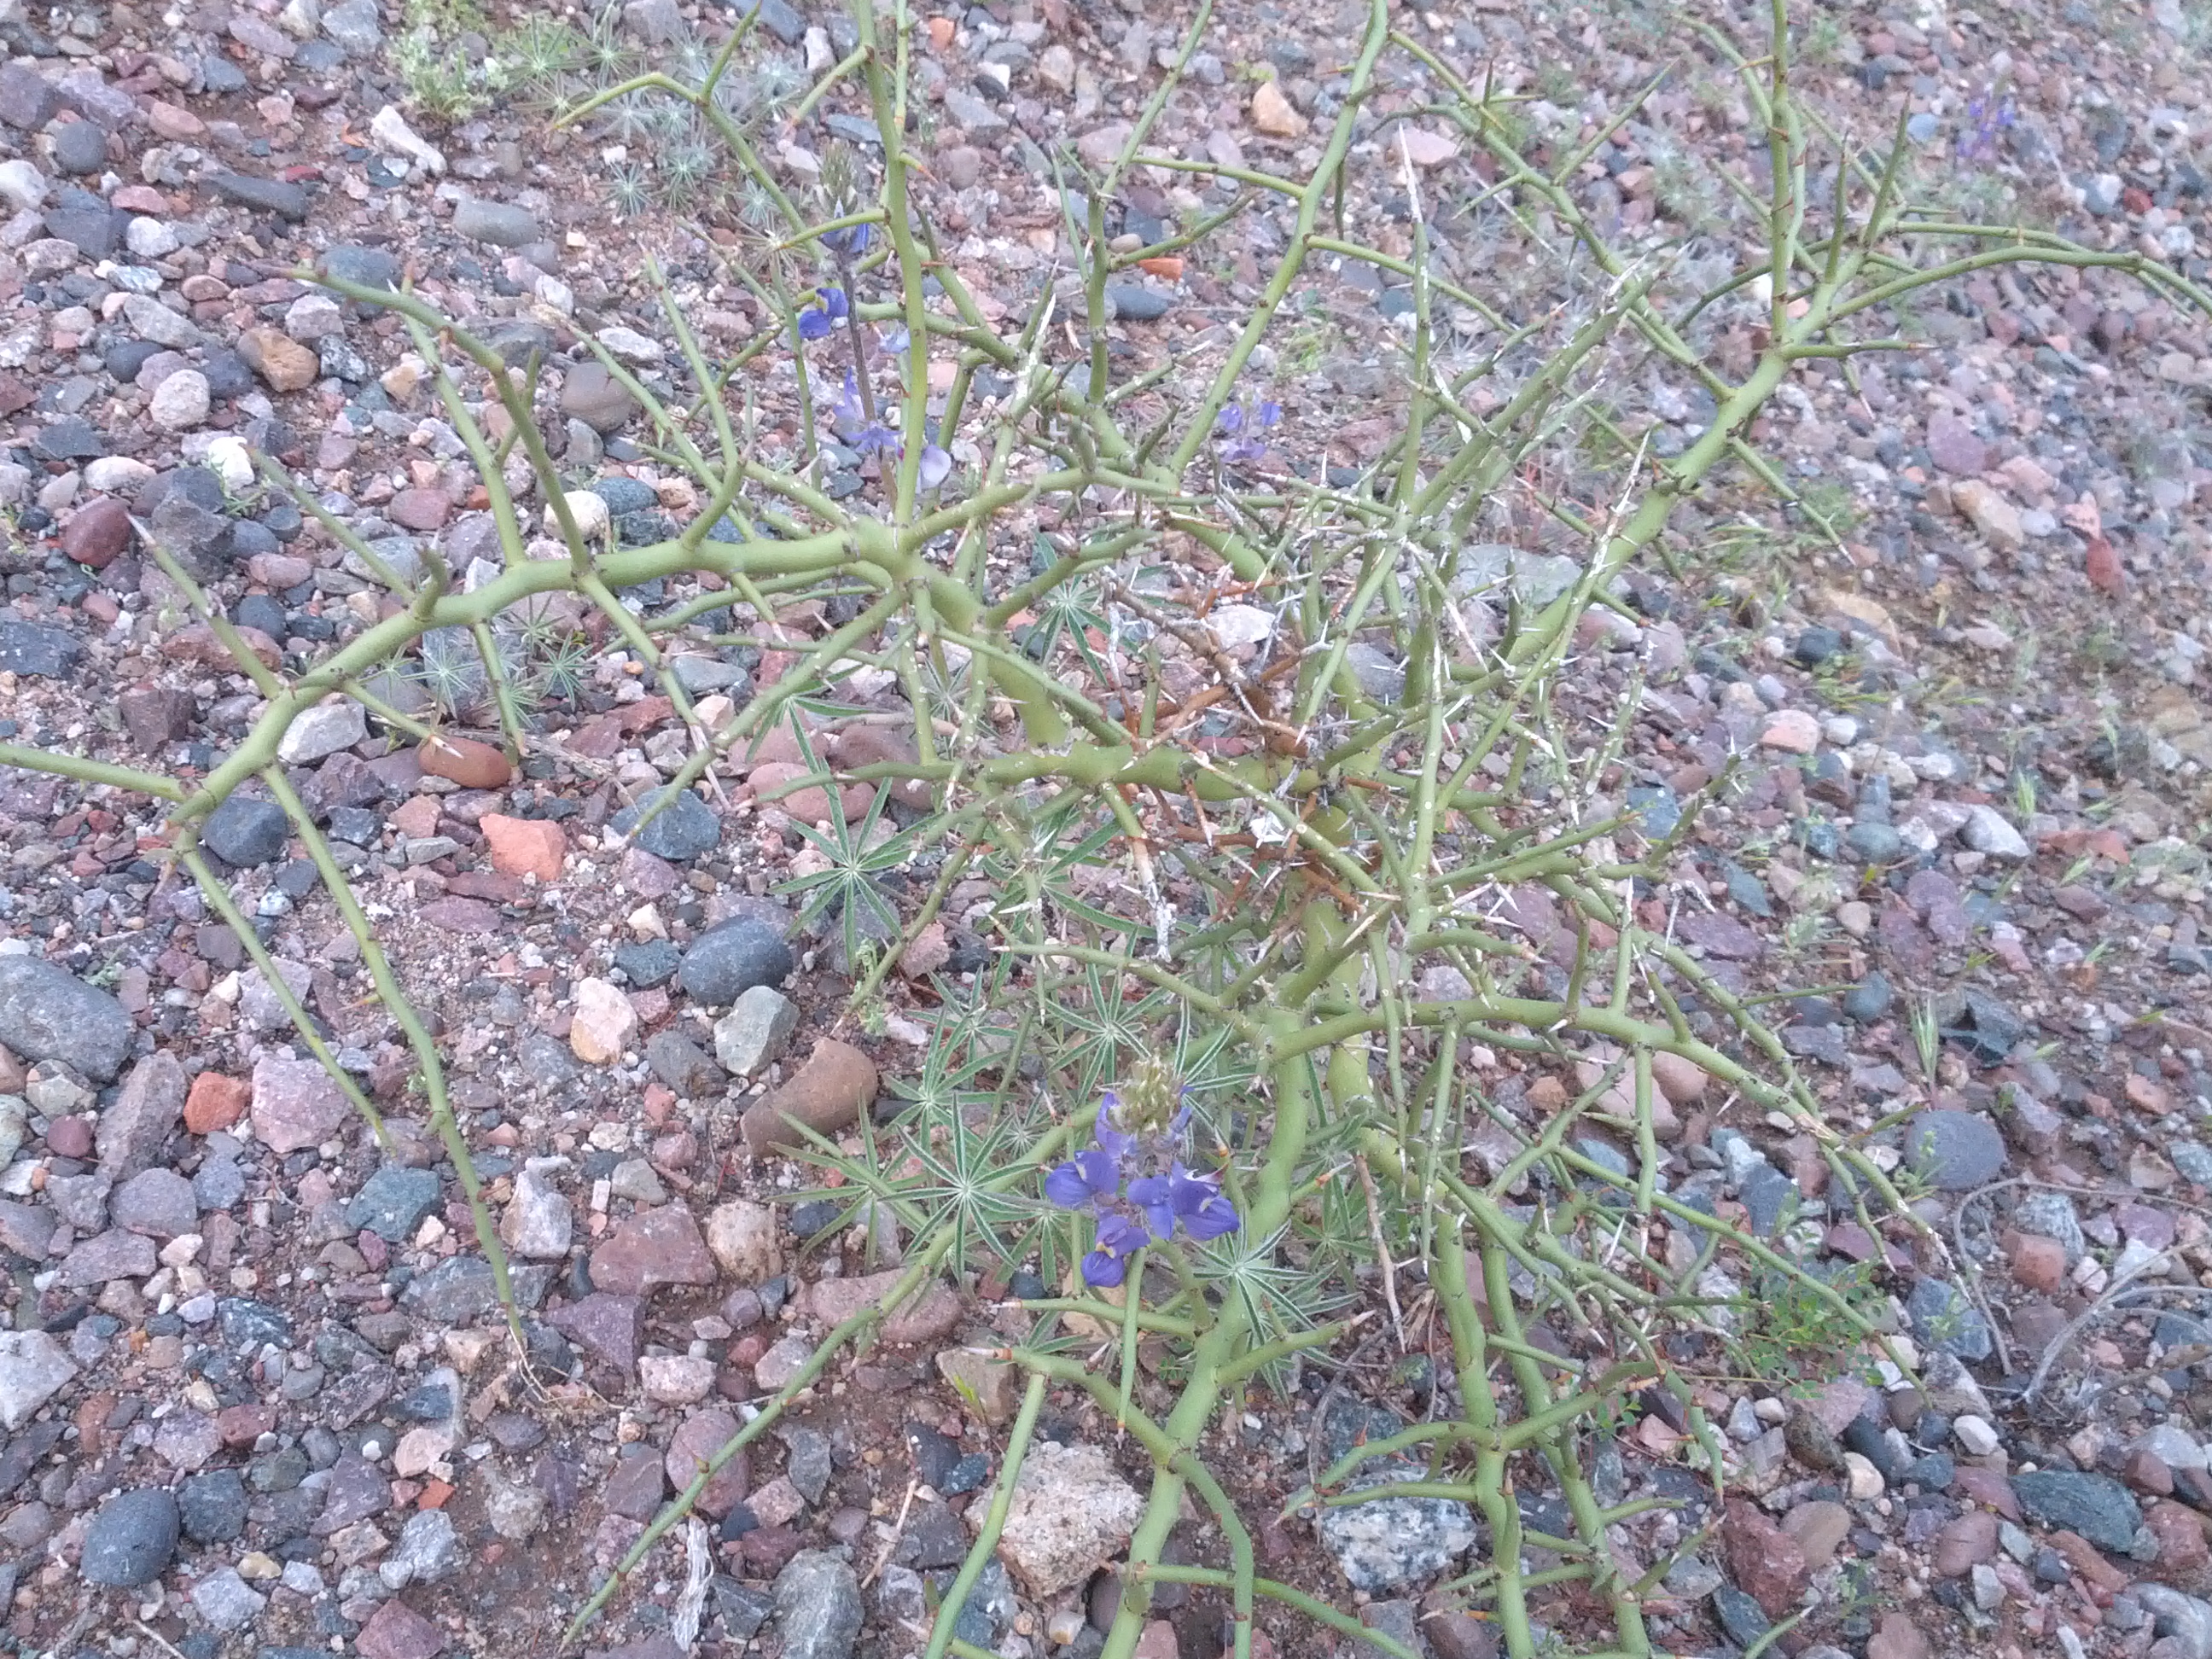 Pretty Little Flower alongside the Trail